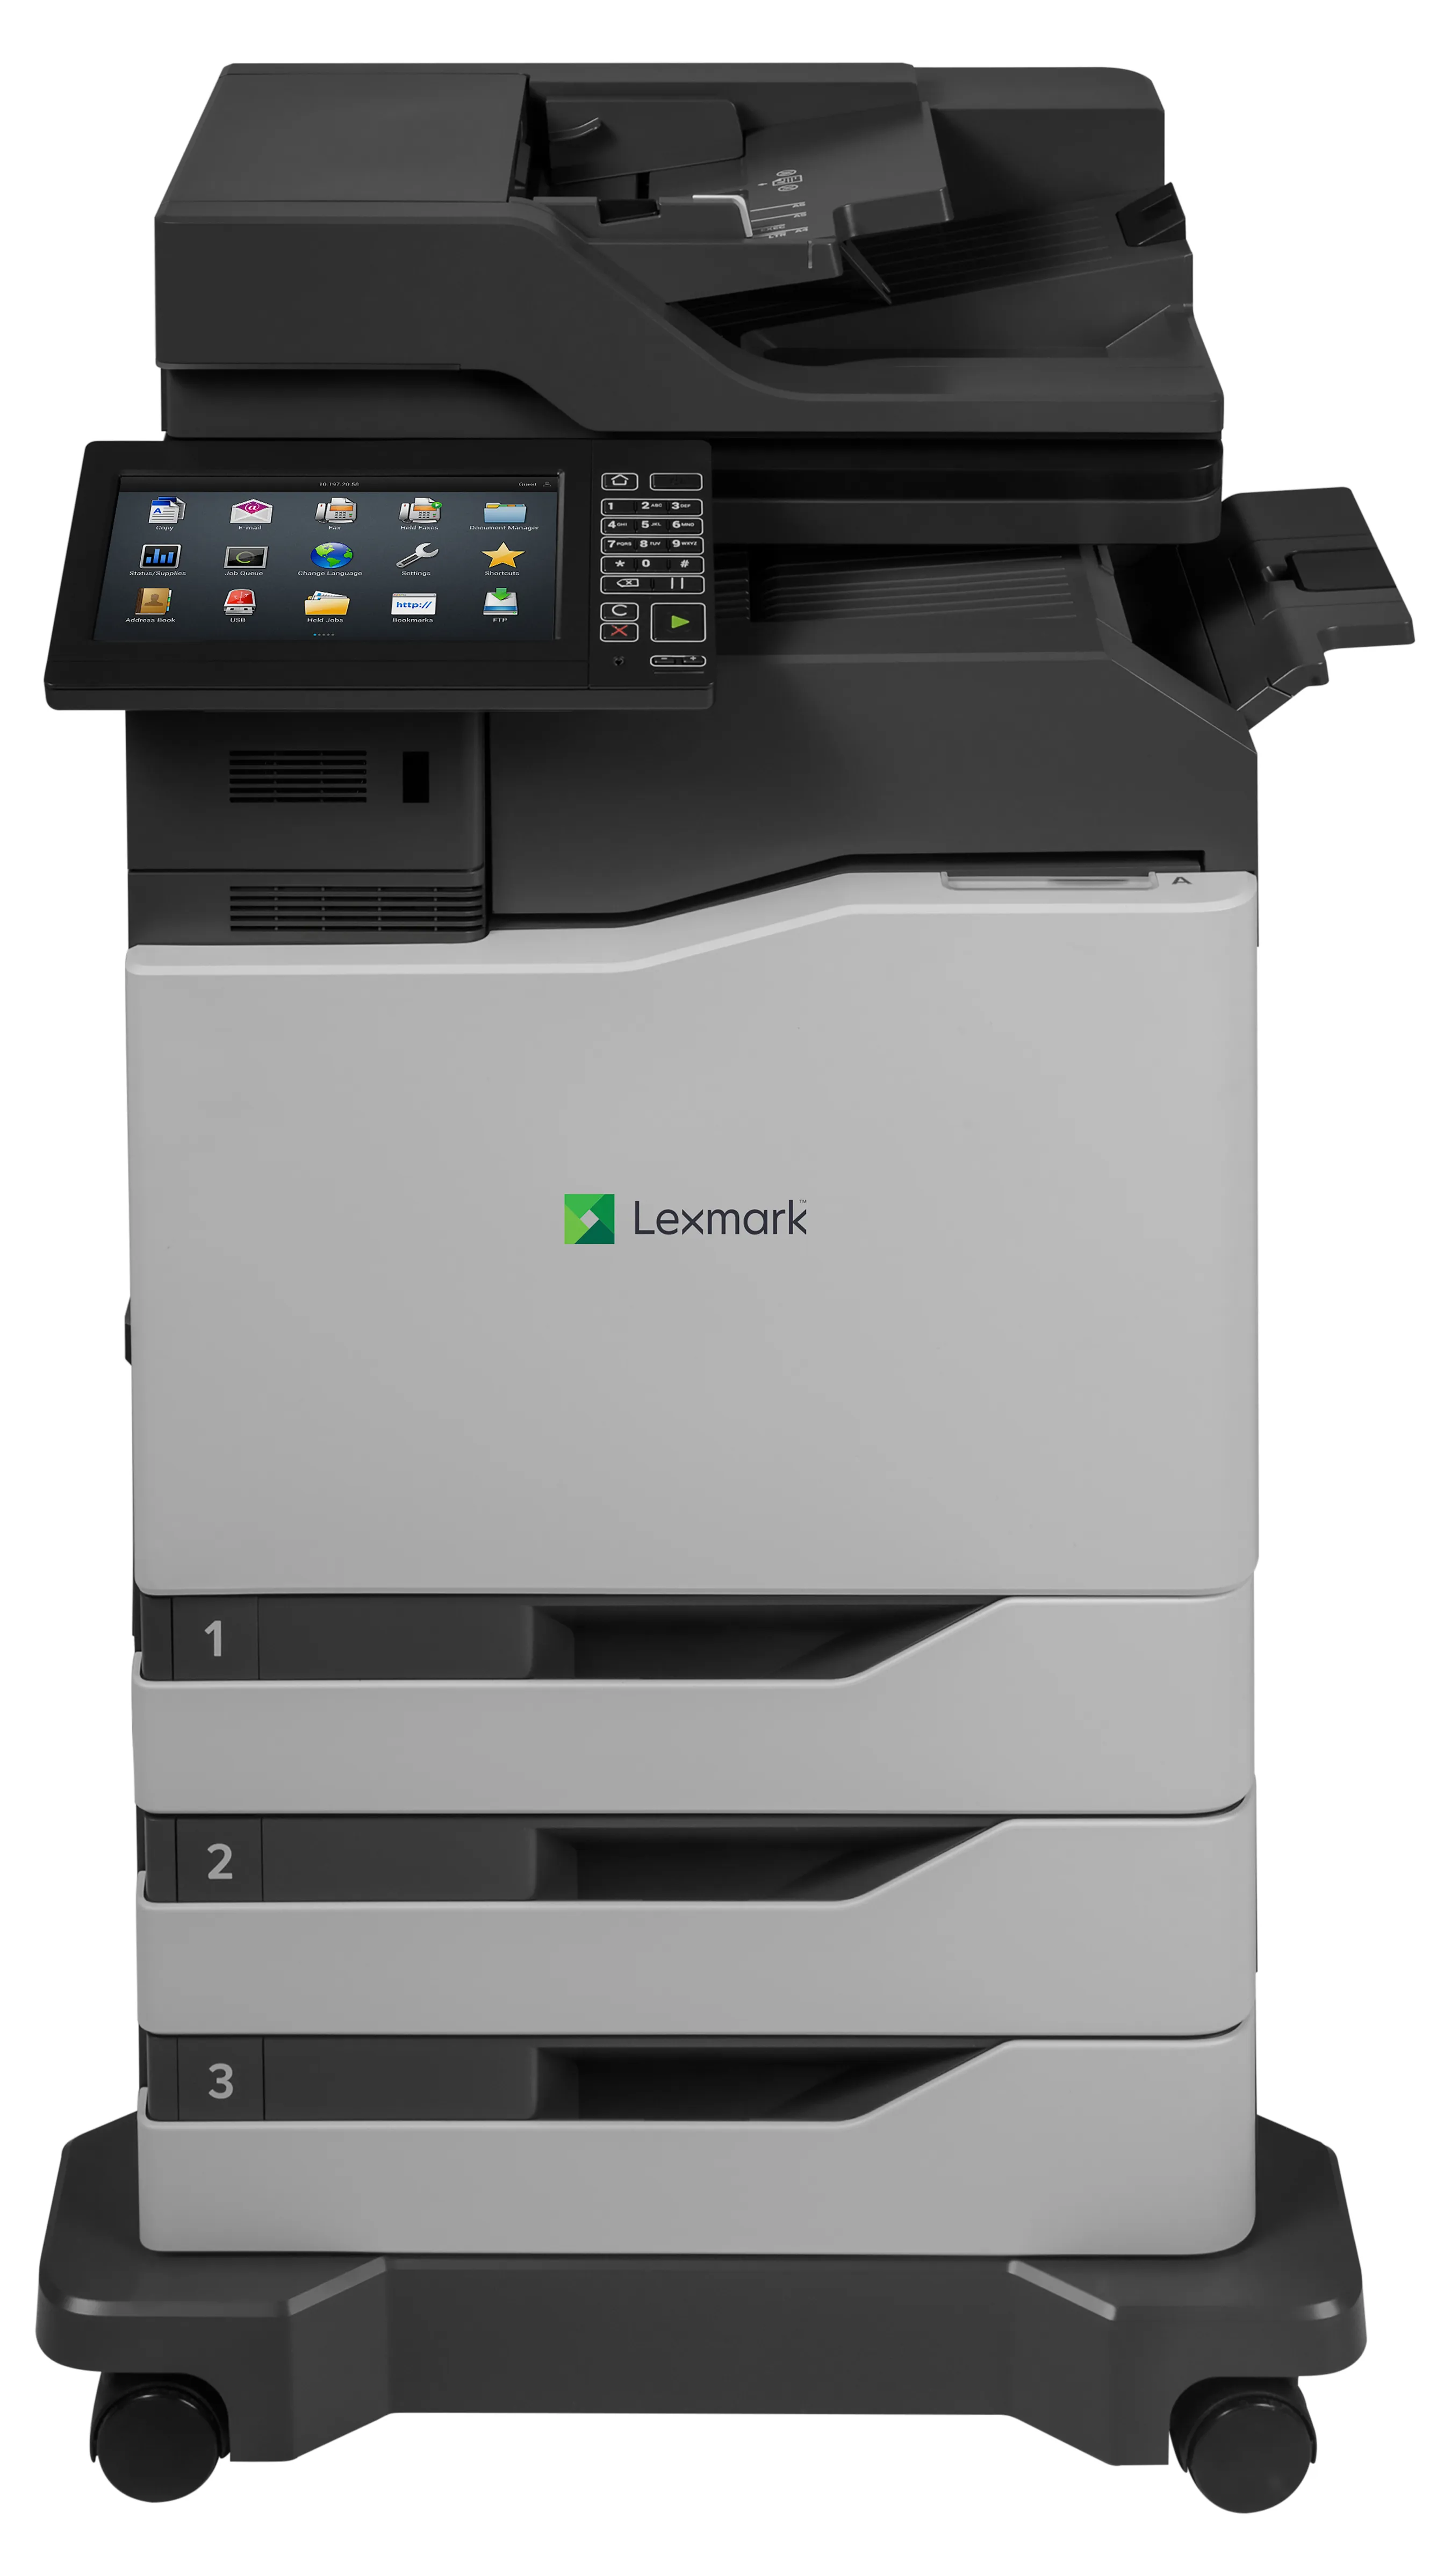 Vente LEXMARK CX860dtfe MFP color A4 laserprinter 57ppm Lexmark au meilleur prix - visuel 6